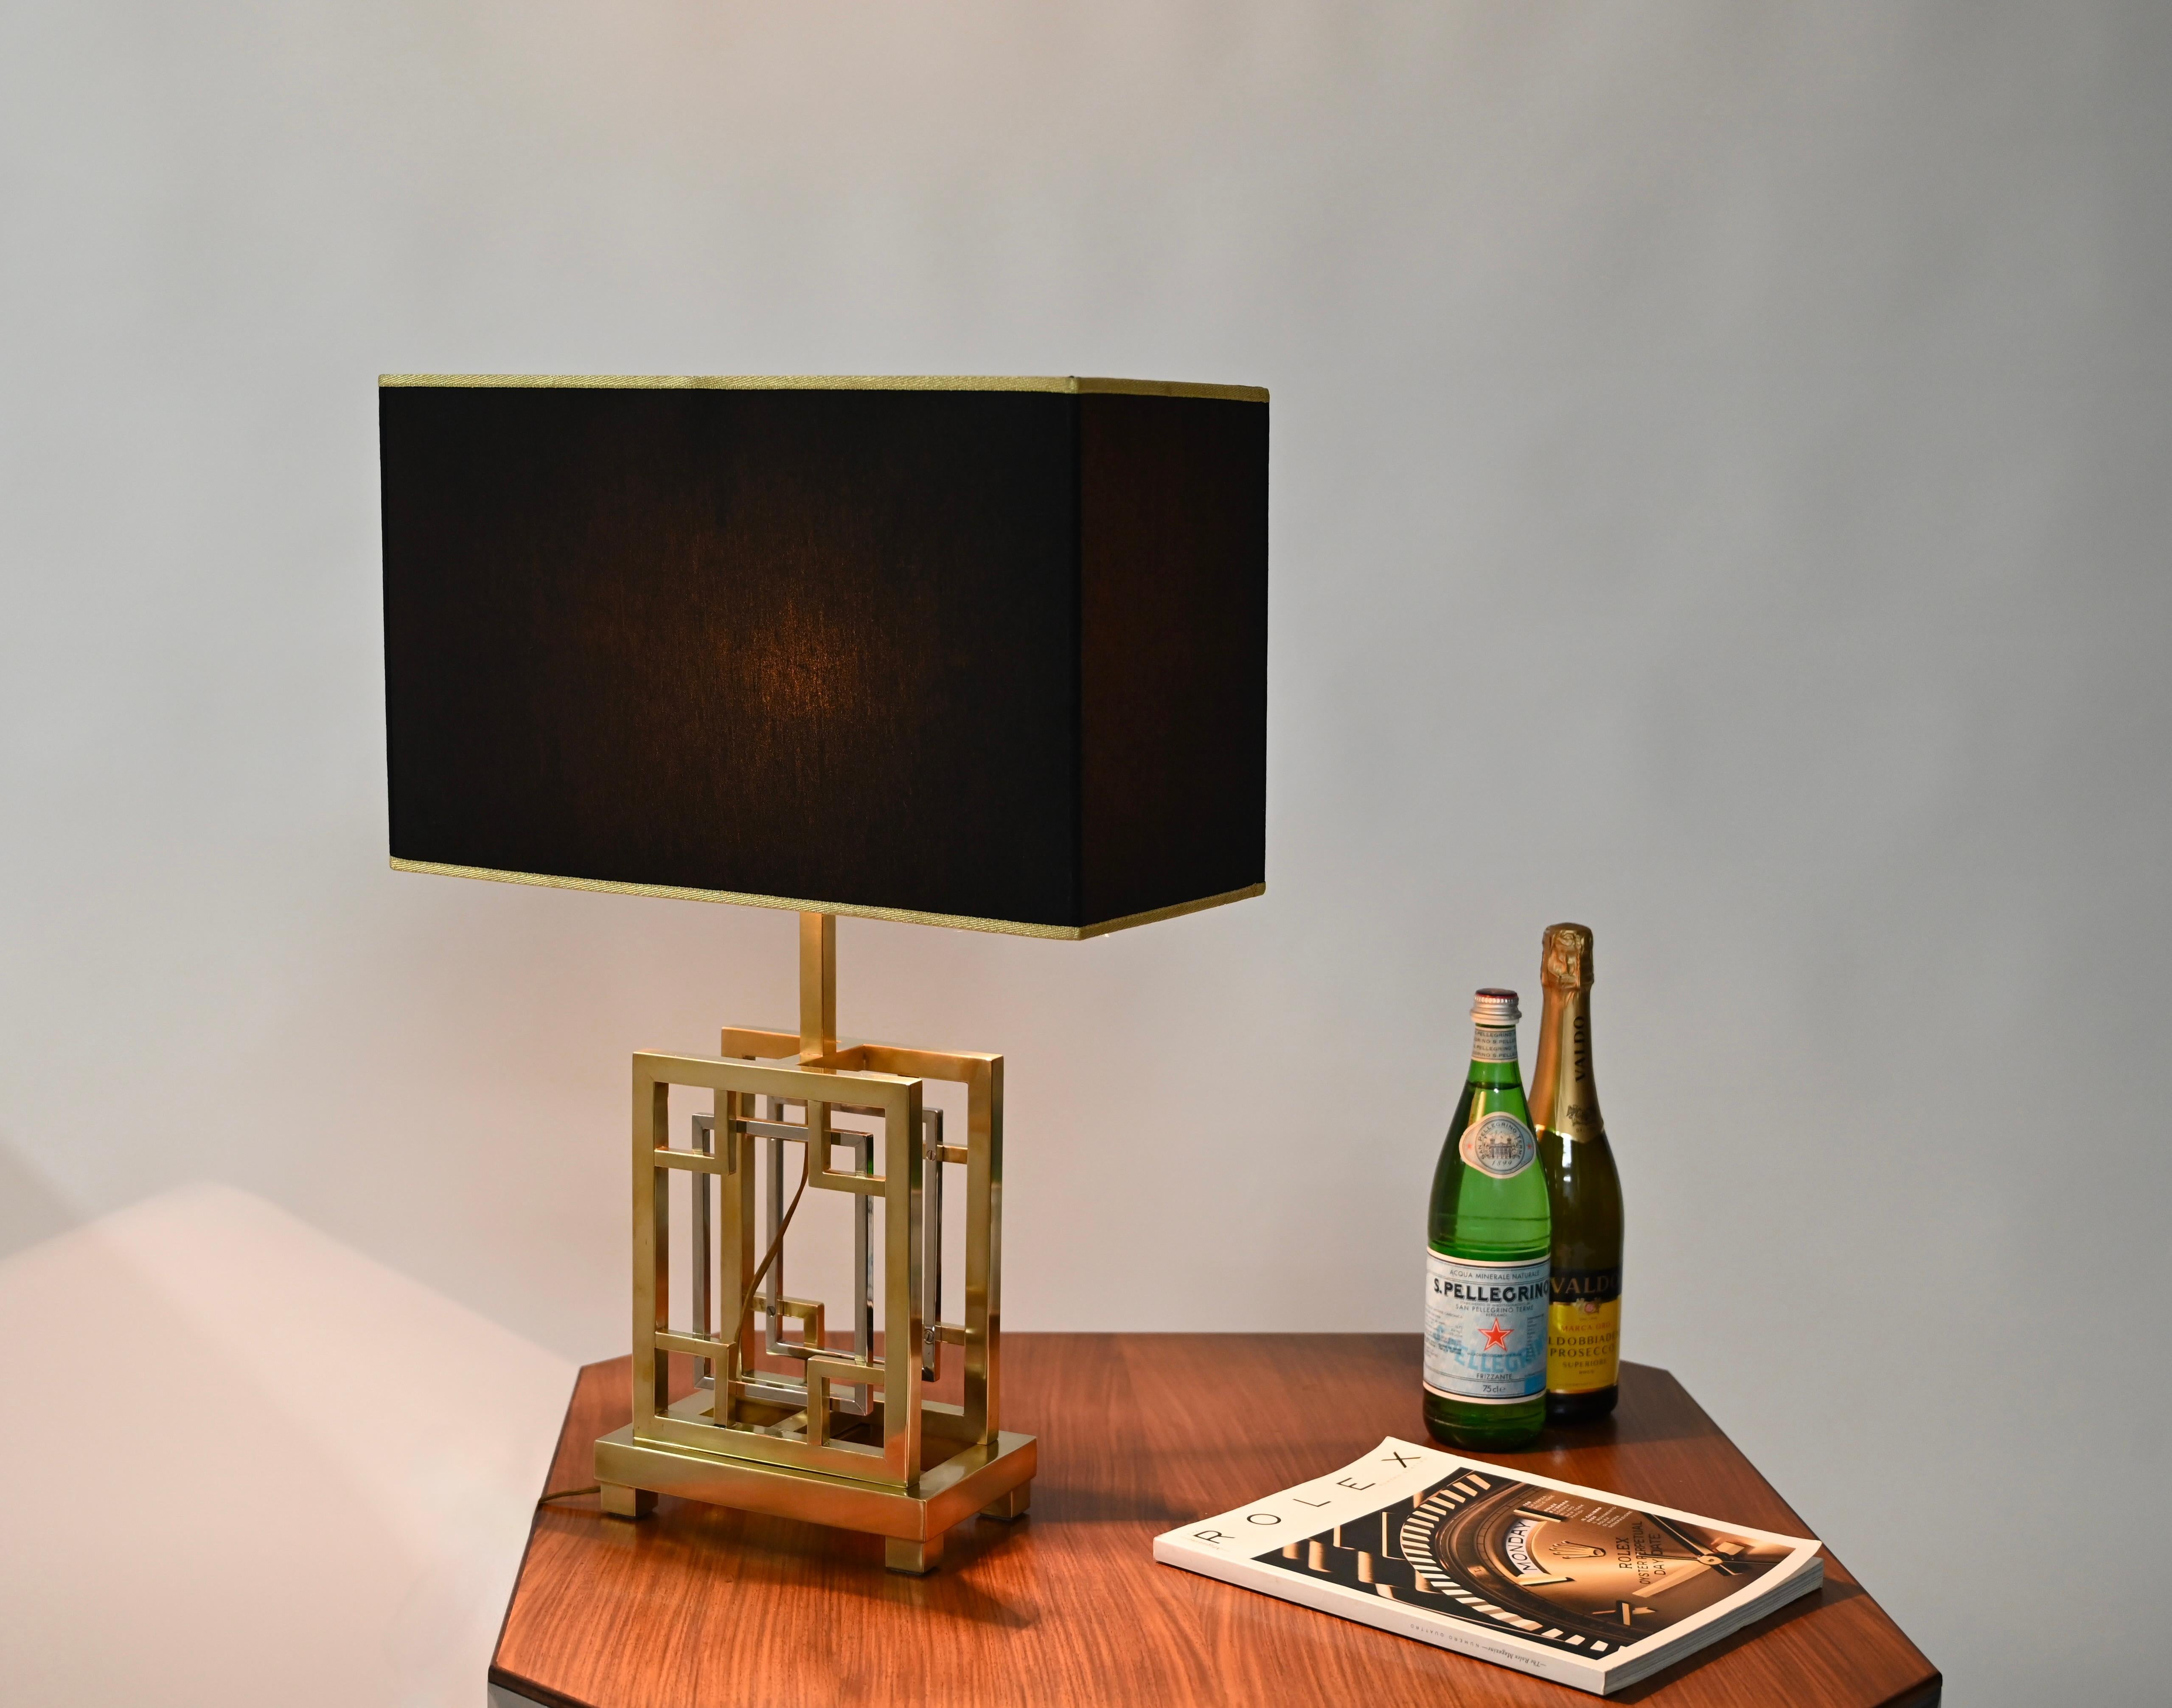 Superbe lampe de table en laiton et chrome avec abat-jour noir et or. Cette magnifique pièce a été conçue en Italie dans le style de Willy Rizzo. 

Cette magnifique lampe de table est entièrement réalisée dans une combinaison géométrique de laiton